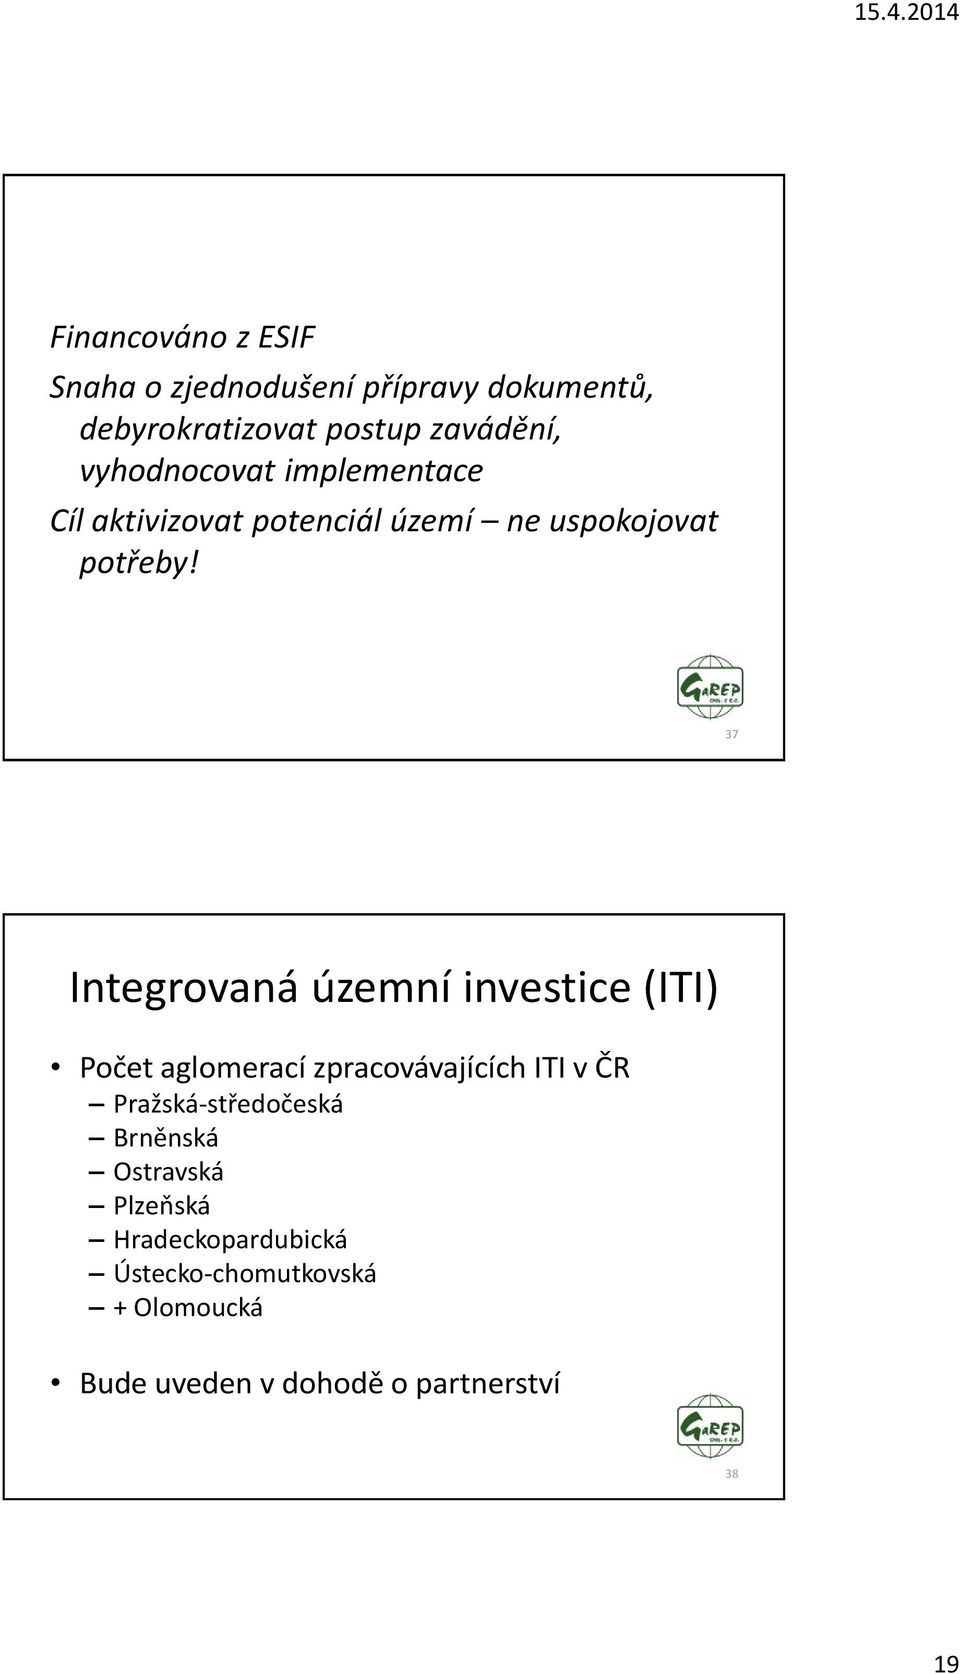 37 Integrovaná územní investice (ITI) Počet aglomerací zpracovávajících ITI v ČR